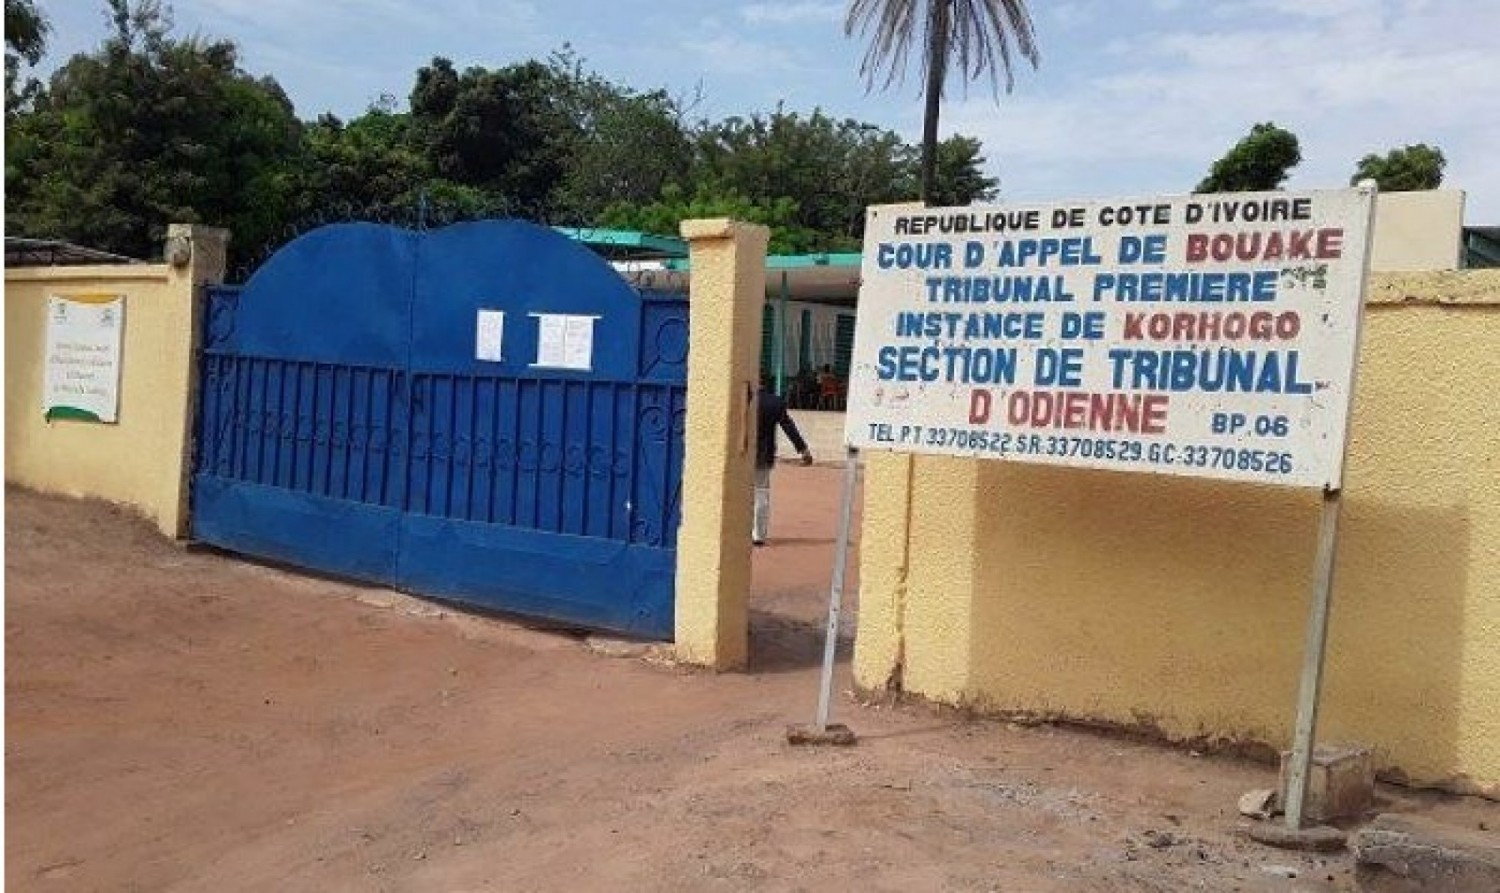 Côte d'Ivoire : Publication de la nudité de son amante, un homme et sa compagne condamnés à deux ans de prison par le tribunal d'Odienné